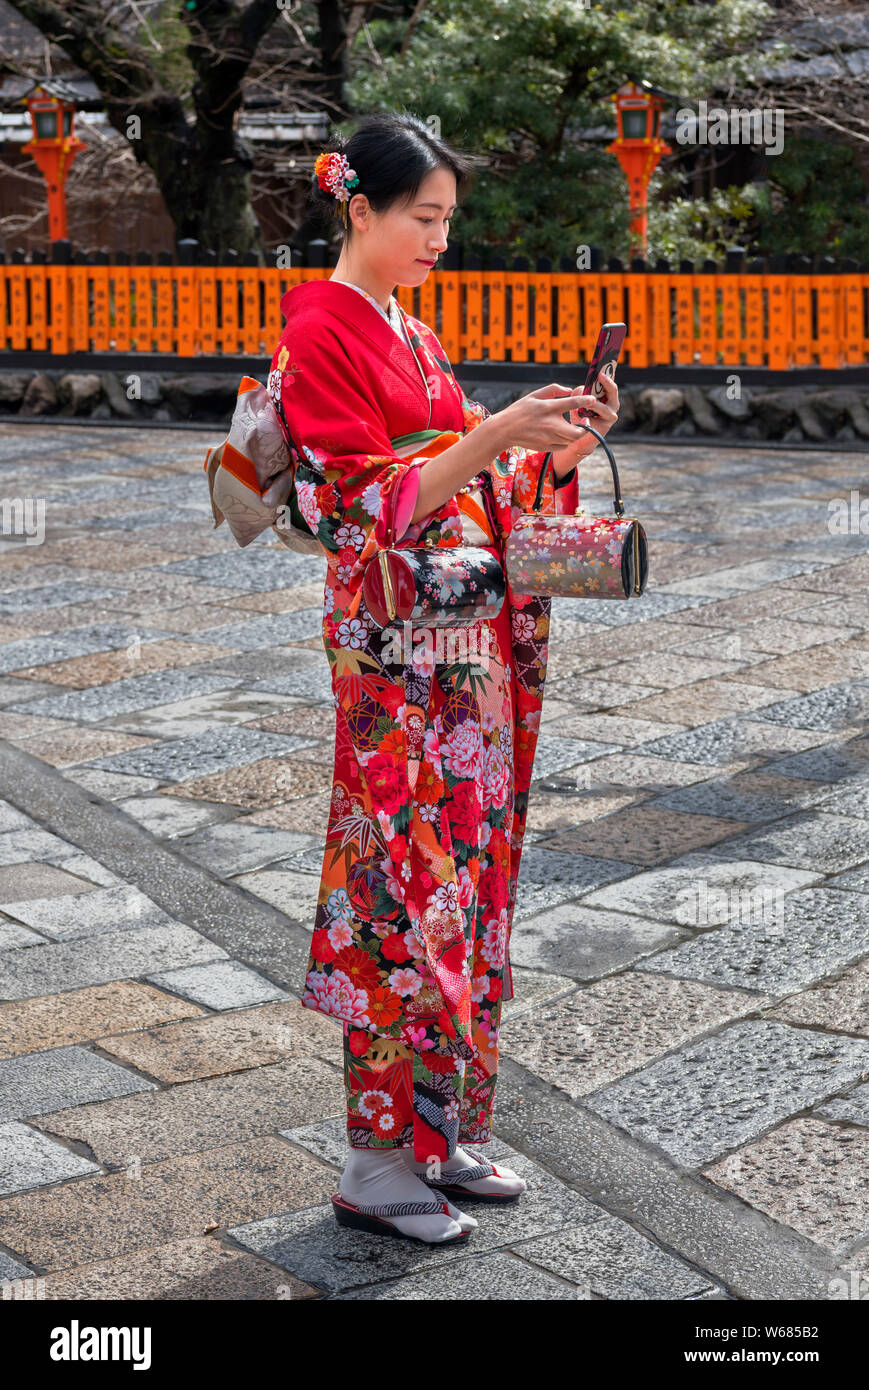 Jeune femme, portant le costume traditionnel, à la recherche de son smartphone, Shinbashi dori, Kyoto, Japon Banque D'Images